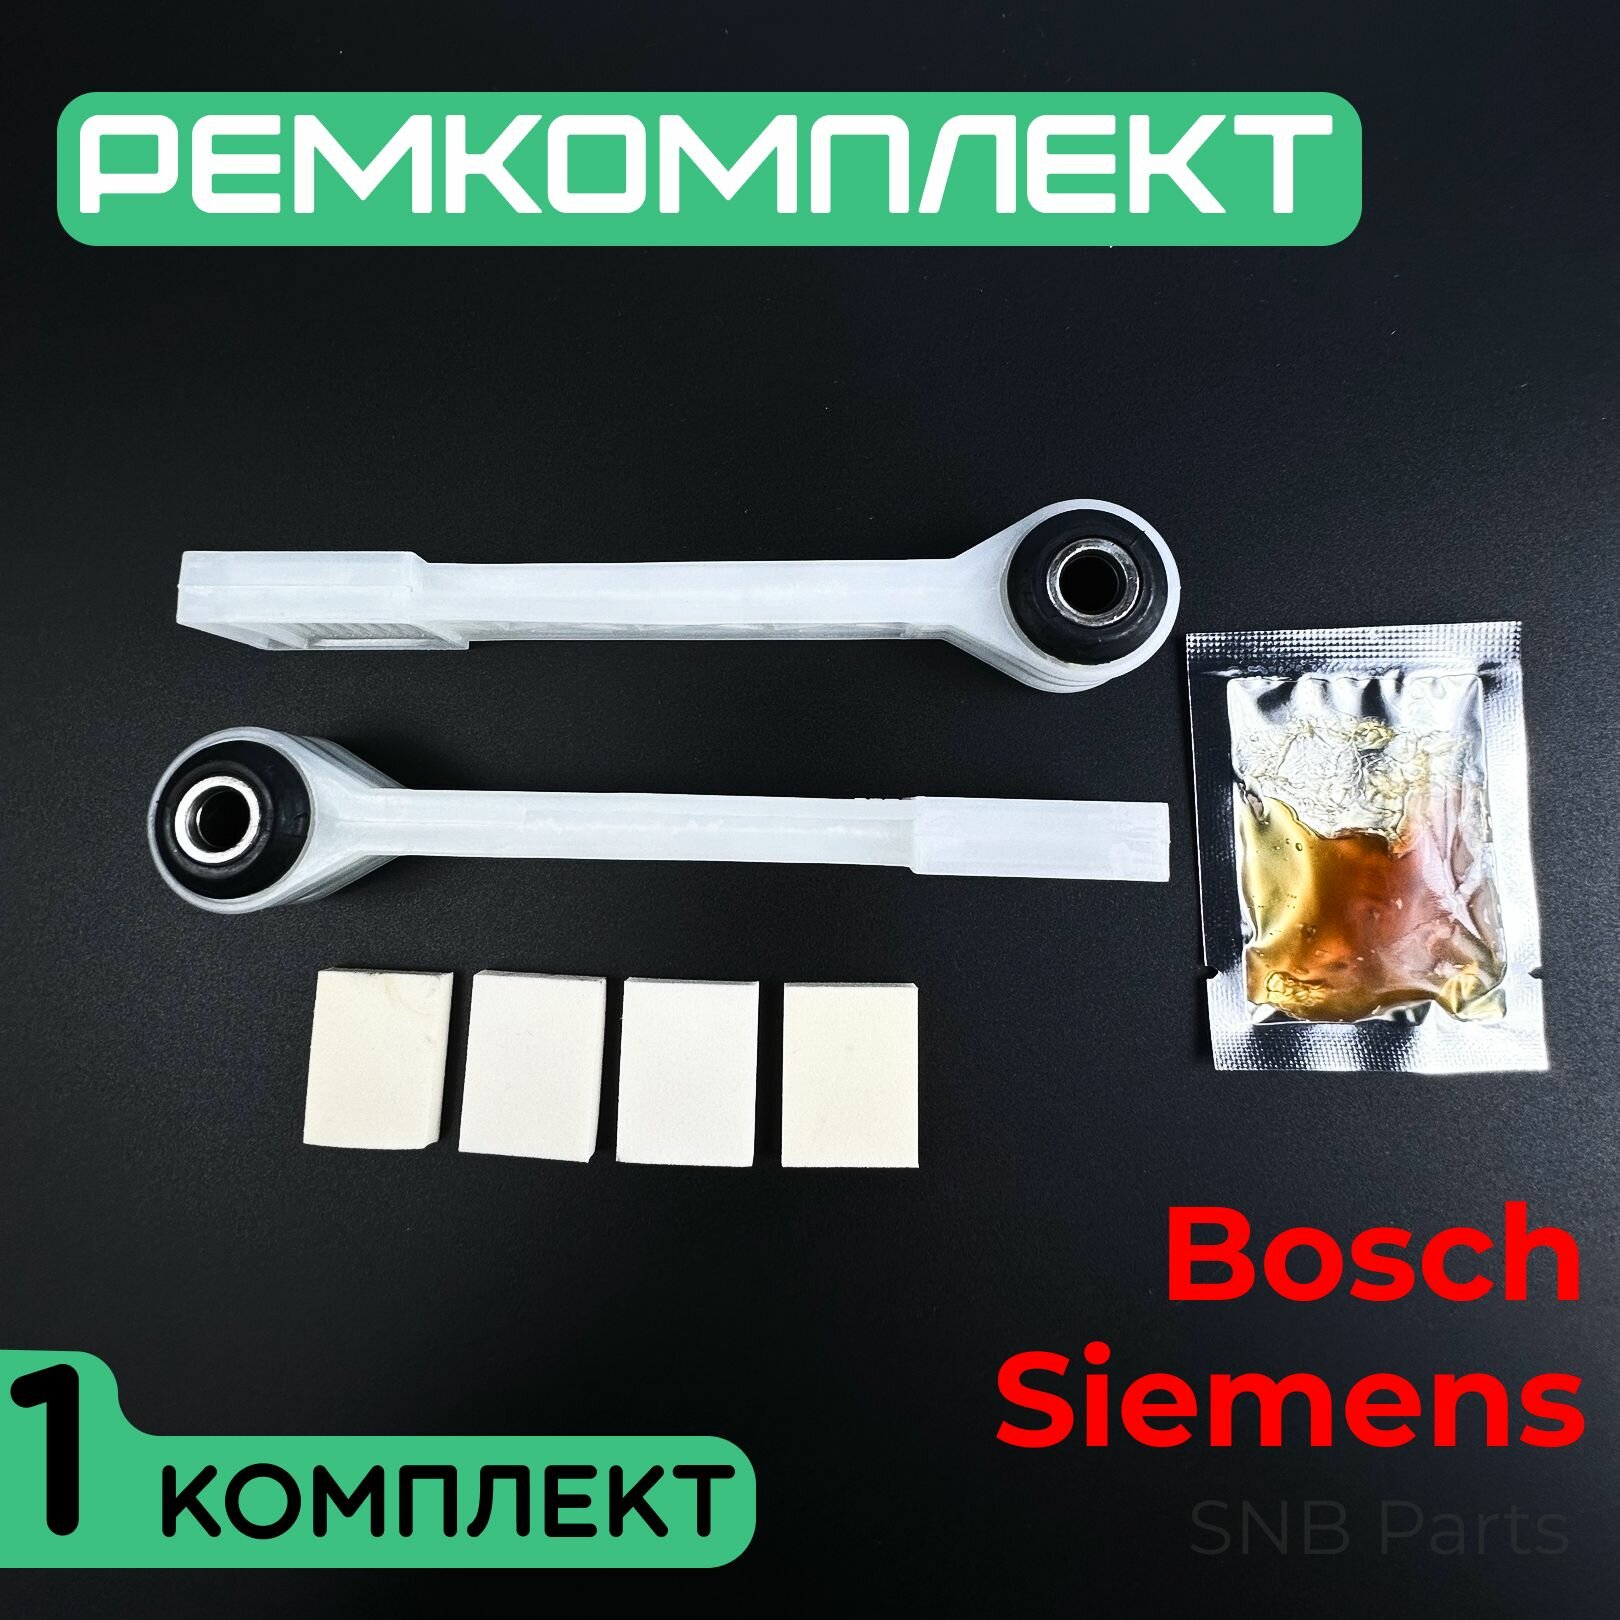 Ремкомплект амортизаторов для стиральной машины Bosch Siemens Neff. Один комплект по 2 шт. Универсальная запчасть для СМА Бош Сименс. SAR900UN 673541